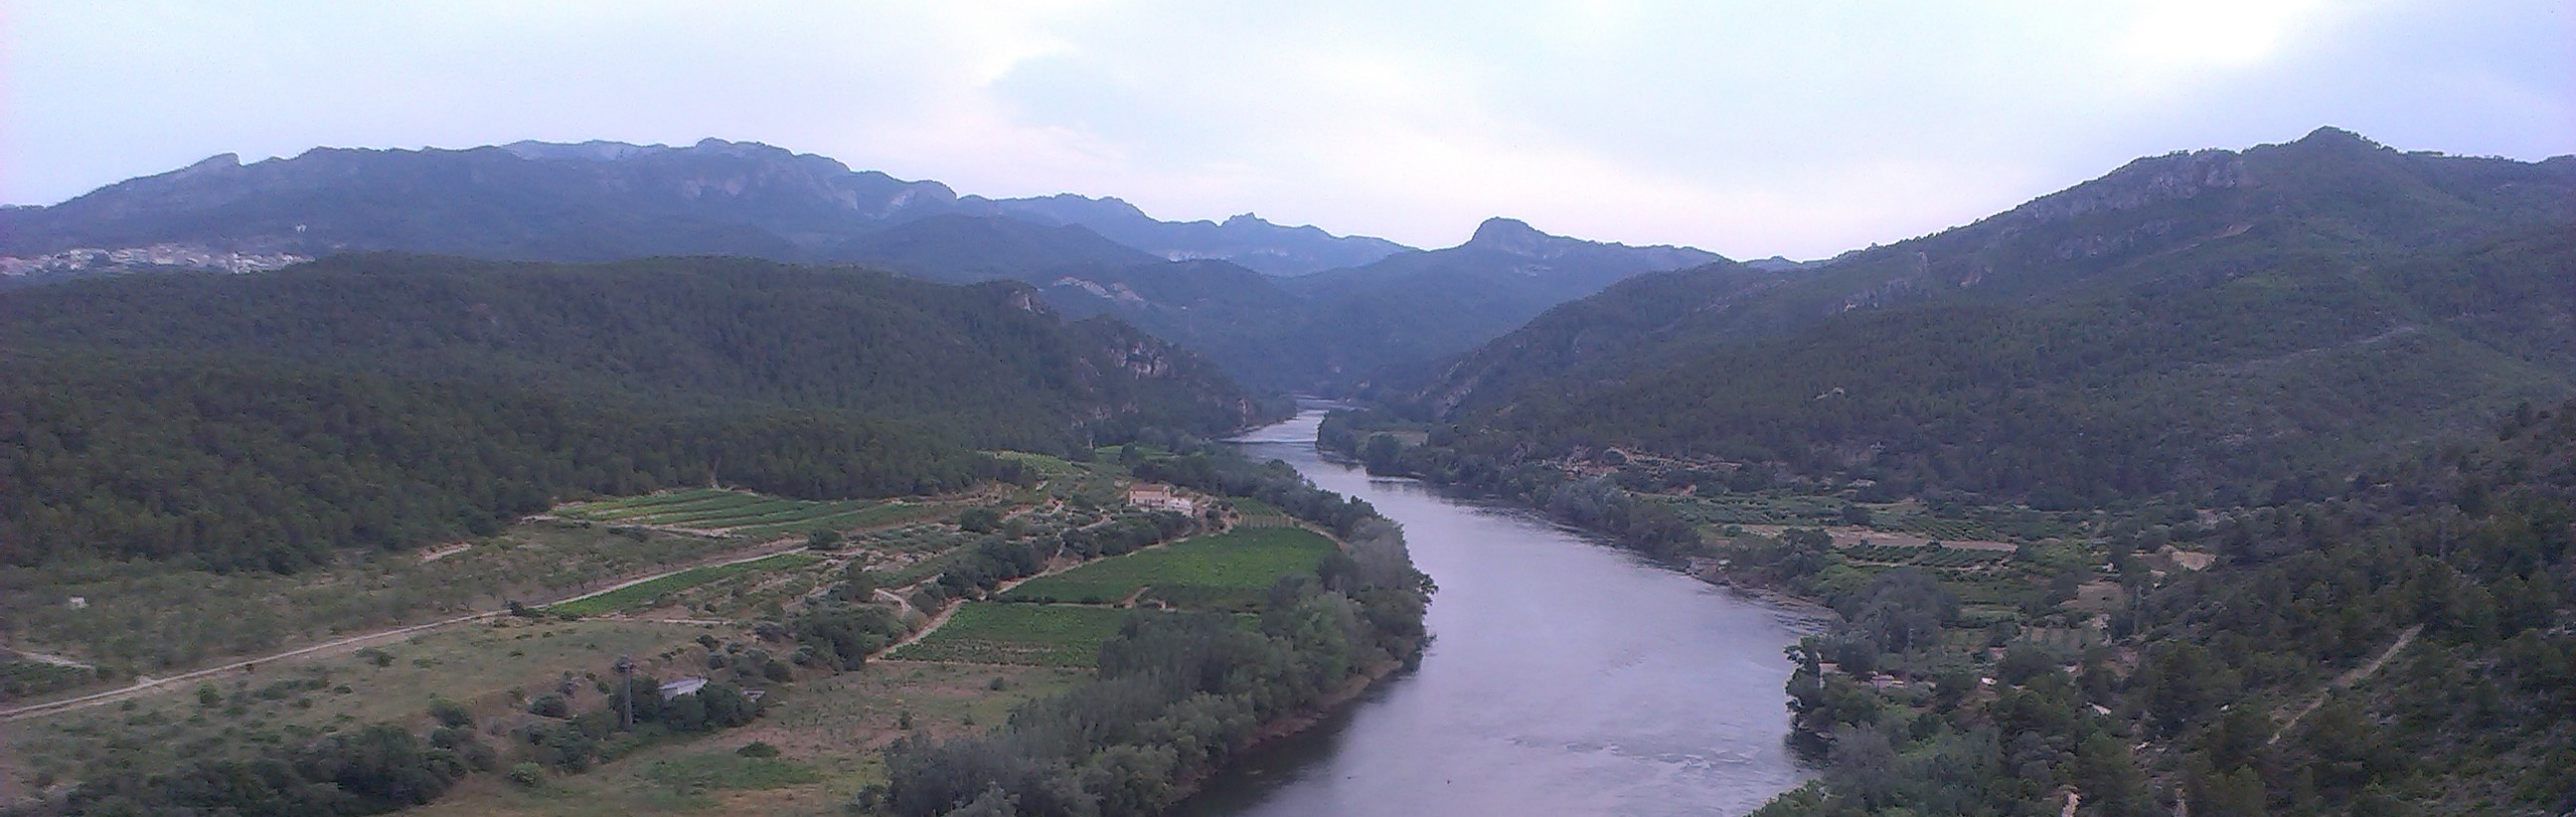 La Confederación Hidrográfica del Ebro colabora en la XIV Olimpiada de Geografía de Aragón